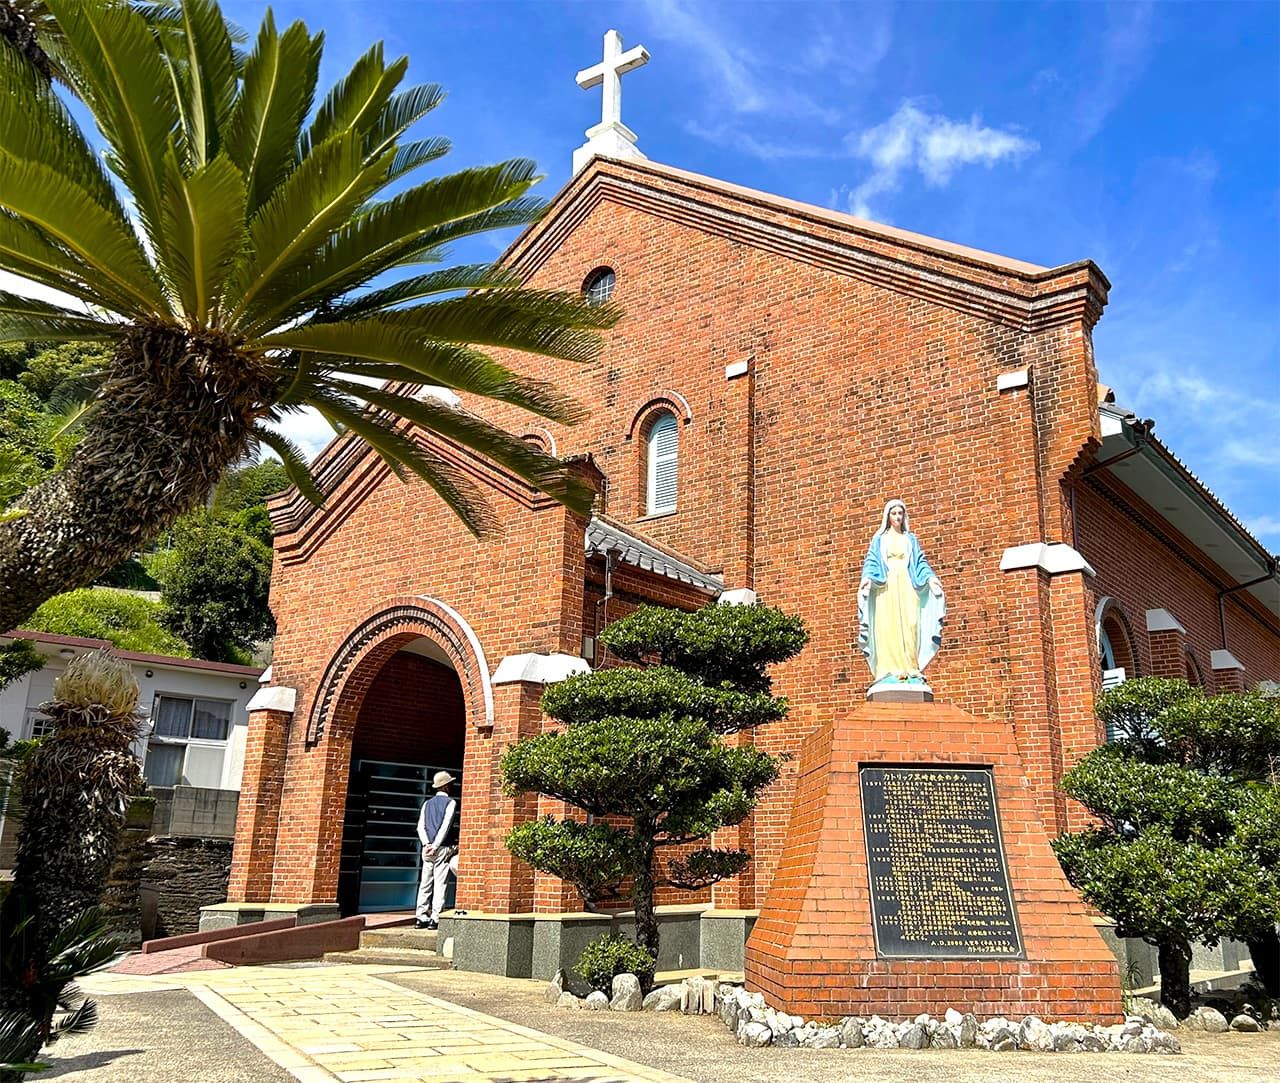 両手を広げて立つ聖母マリア像が印象的な、レンガ造りの黒崎教会。1920年完成。黒崎教会前バス停から徒歩すぐ　写真：天野久樹